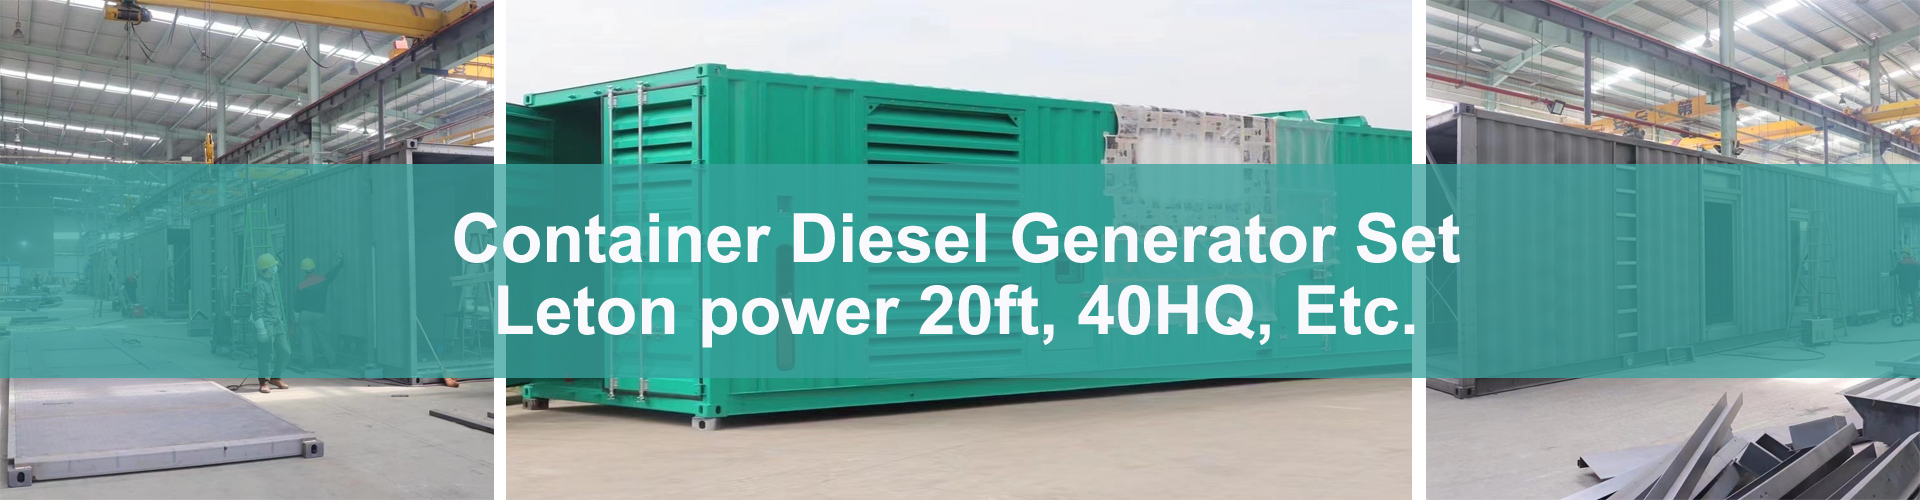 Контейнерна електростанція дизель-генераторна установка 20ft 40HQ контейнерна електростанціяImage